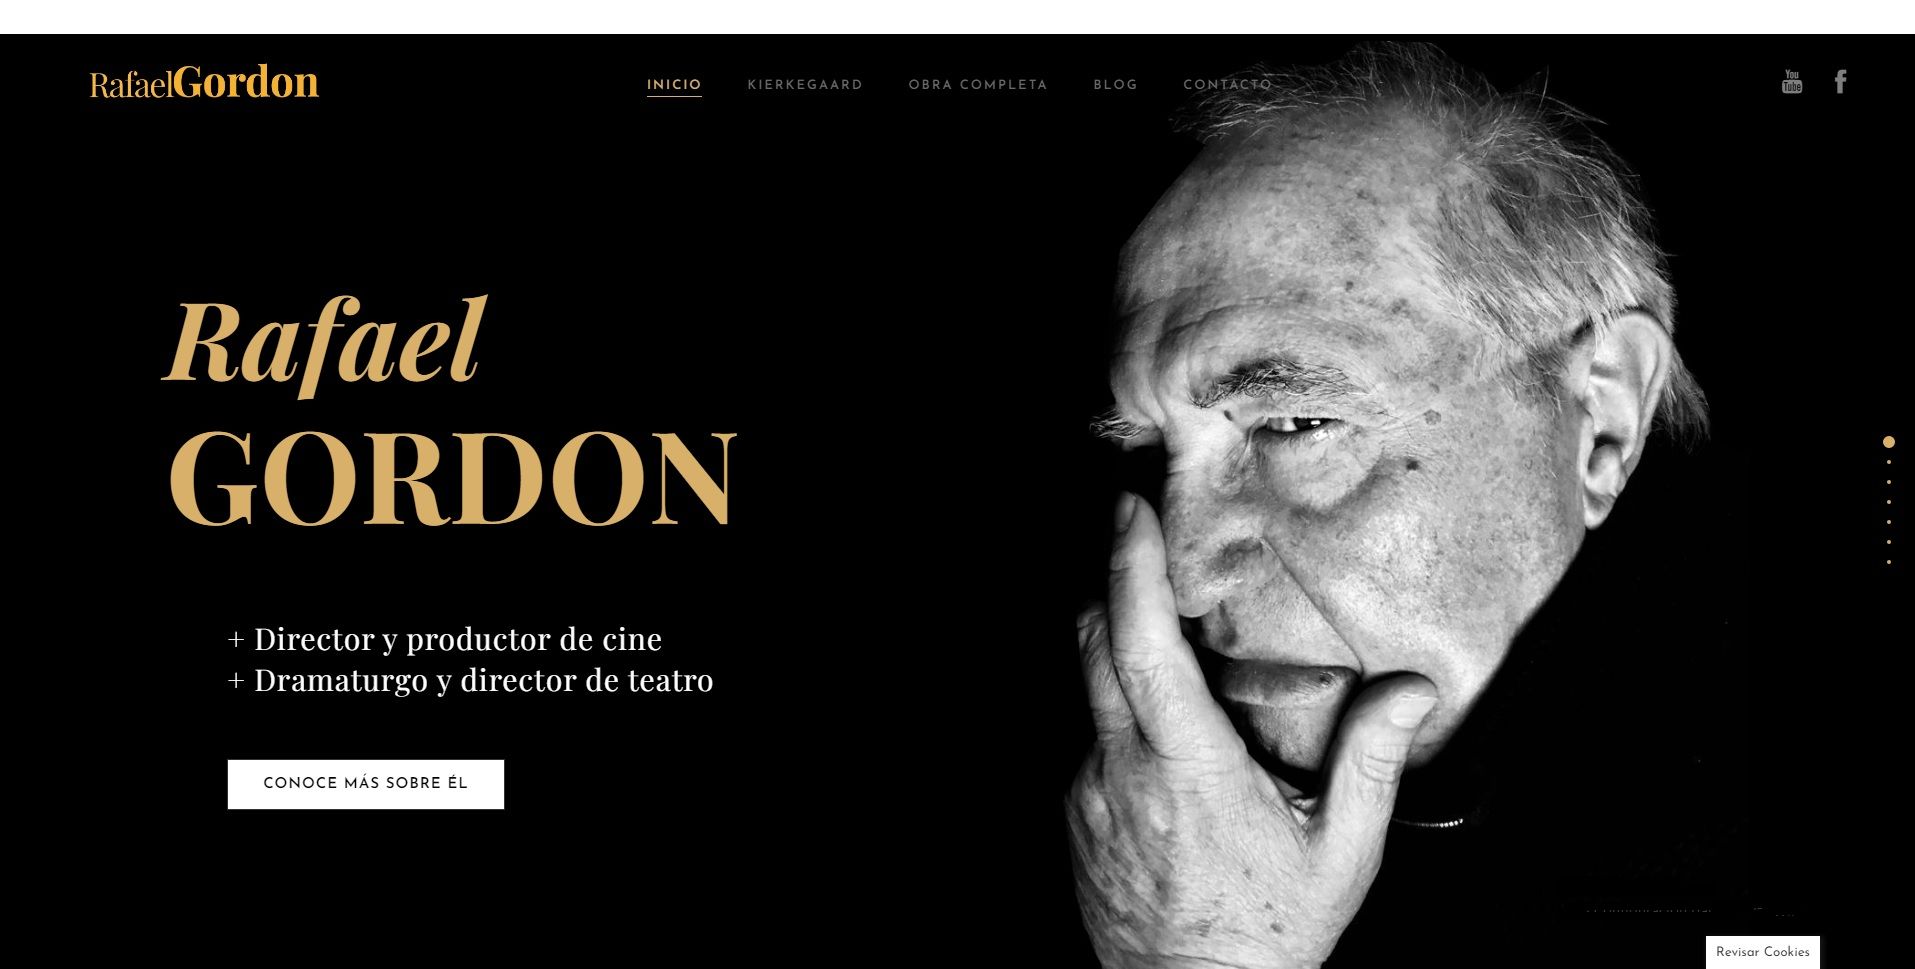 Ejemplo diseño de la página web oficial de Rafael Gordon.